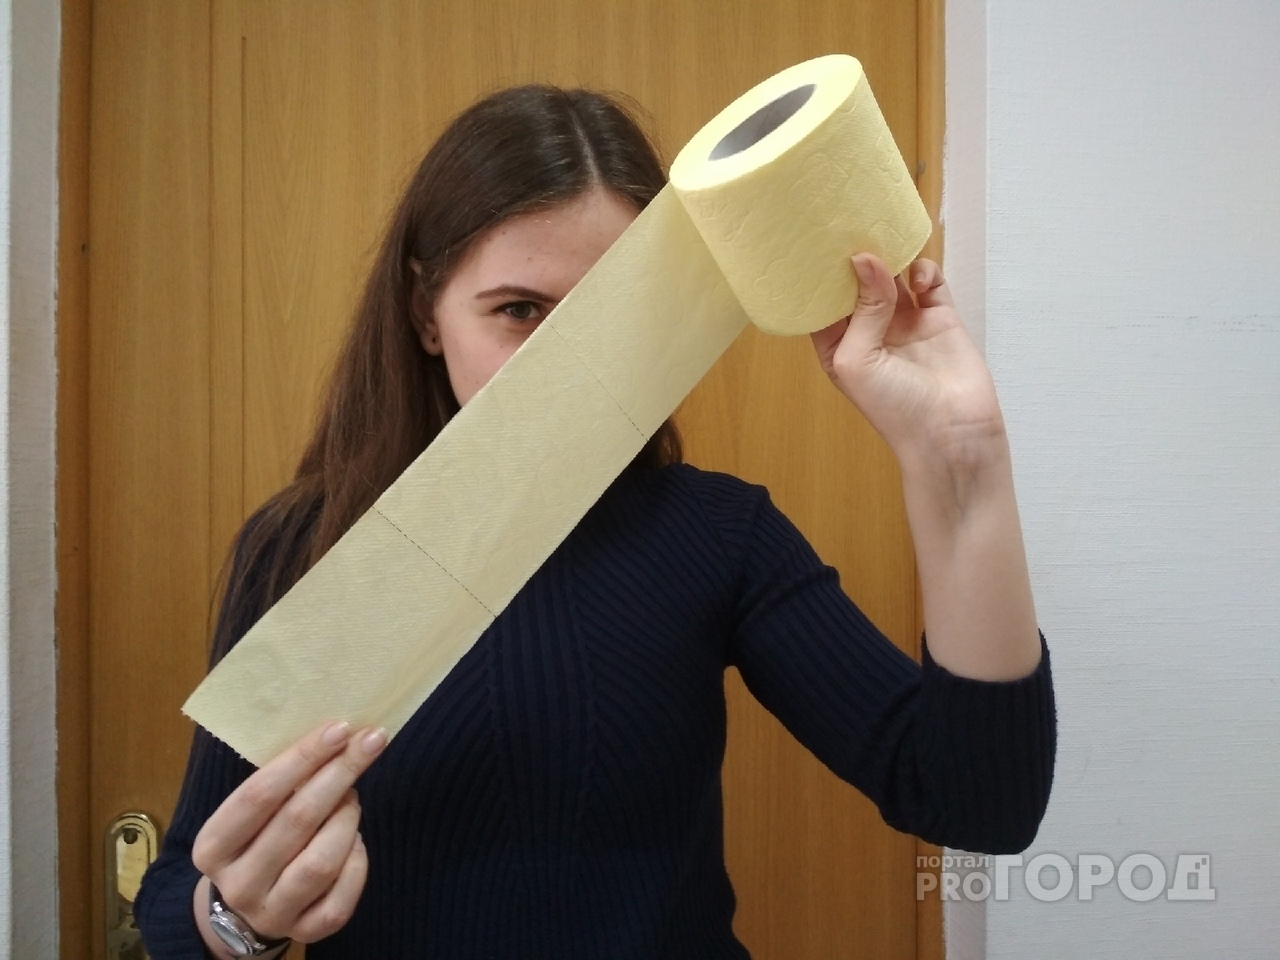 "Почему туалетная бумага?!": эксперты объяснили ажиотаж в магазинах Ярославля